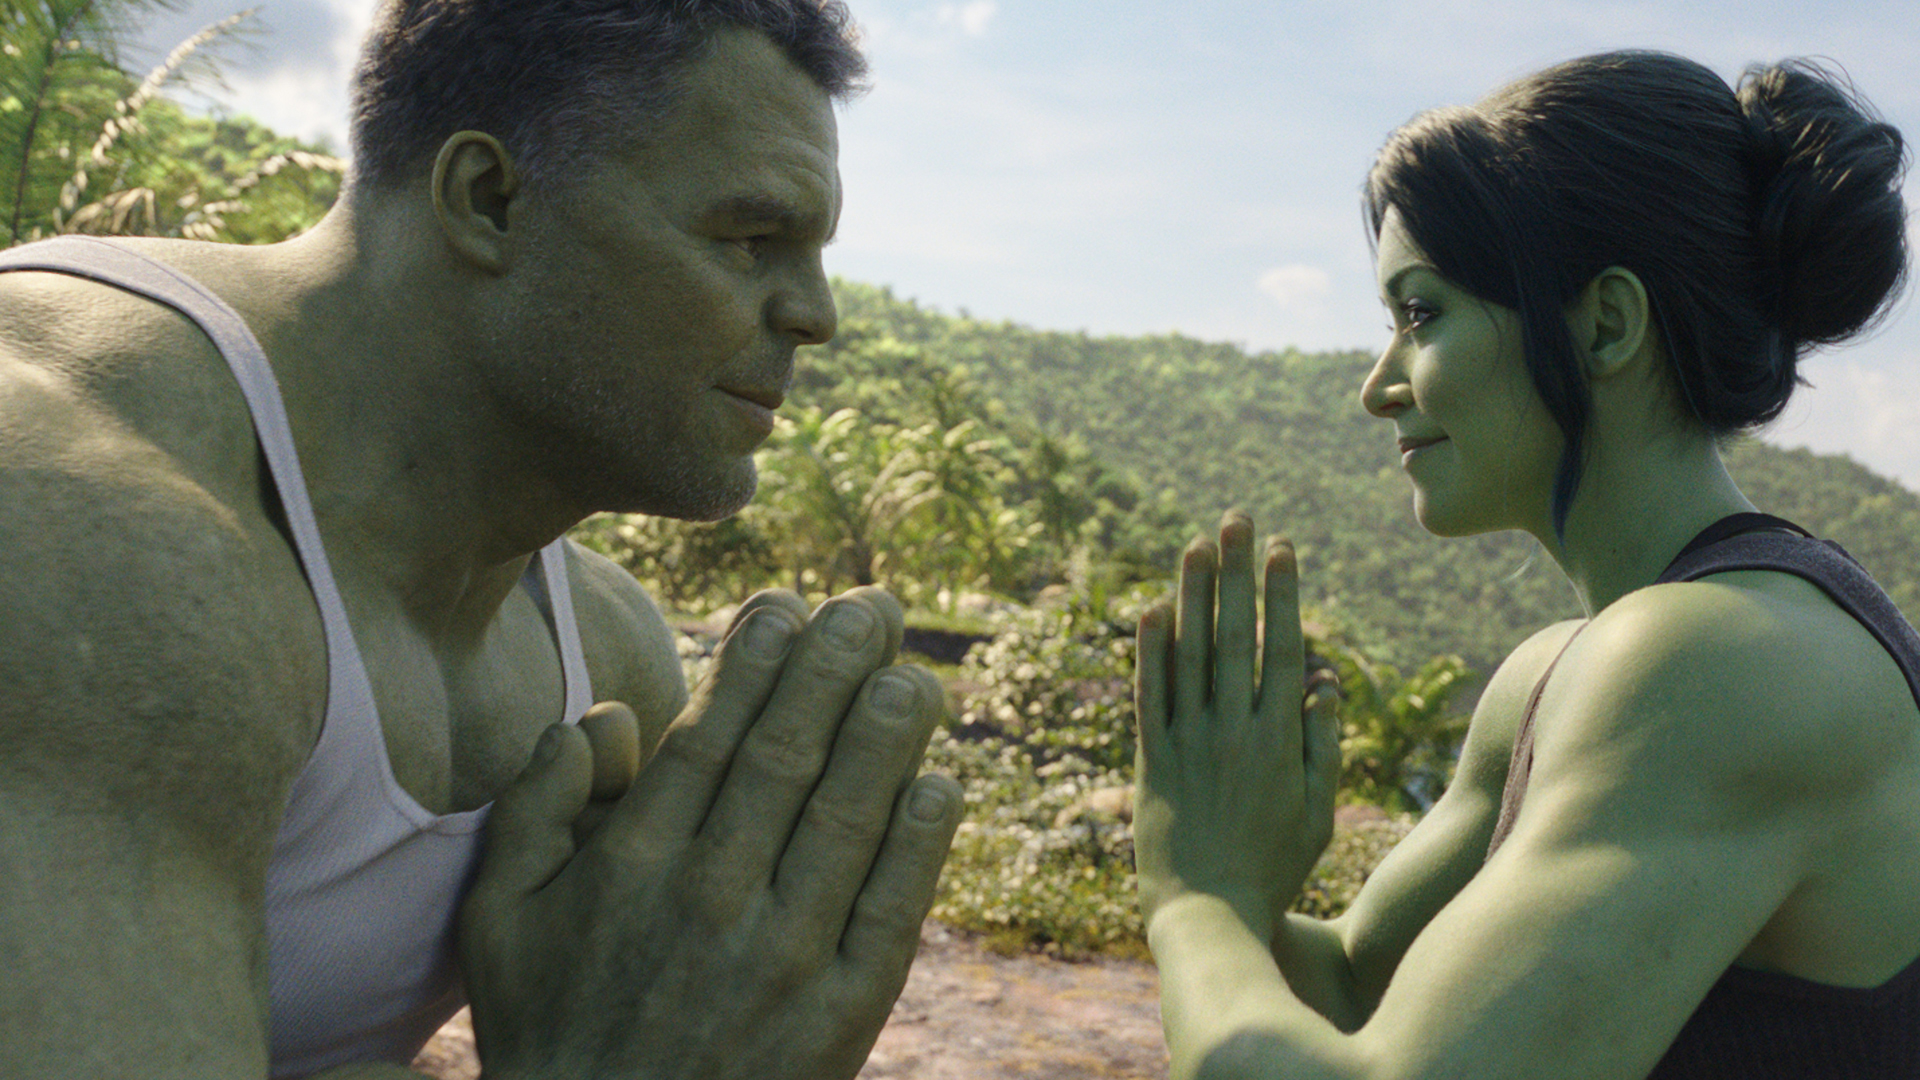 Hulk og She-Hulk øver yoga og meditation som en del av treningen sammen.